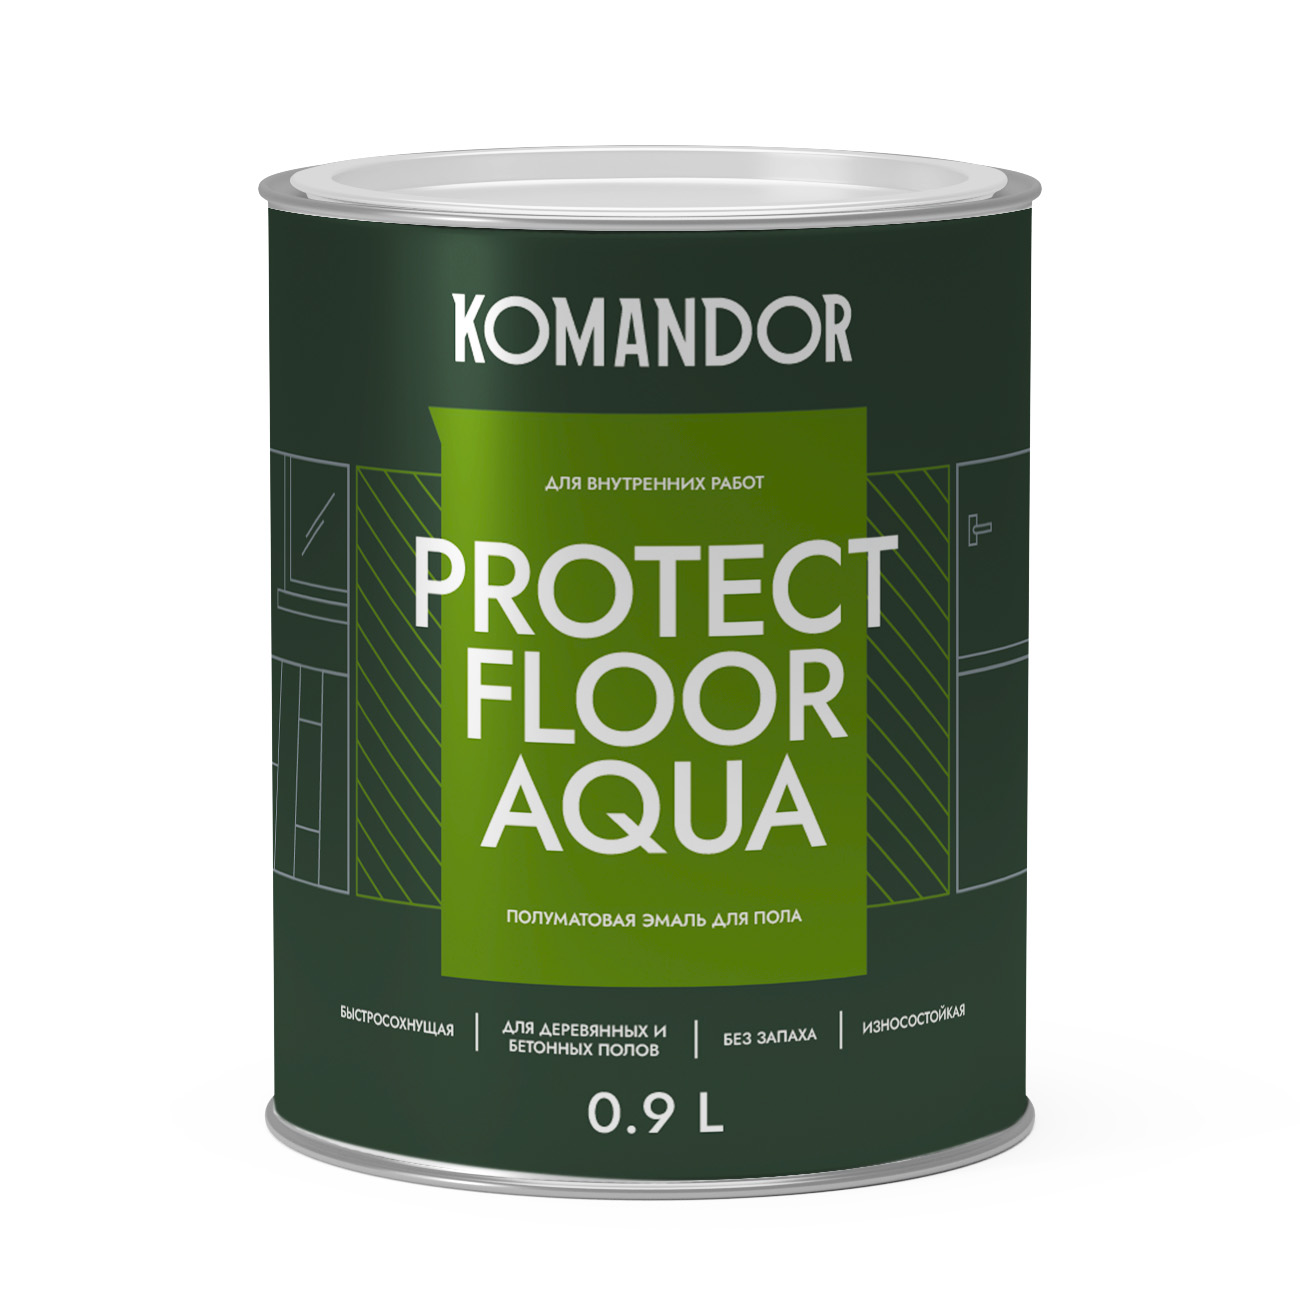 Эмаль для пола и лестниц Komandor Protect Floor Aqua C S1314003001 полуматовая 0,9 л